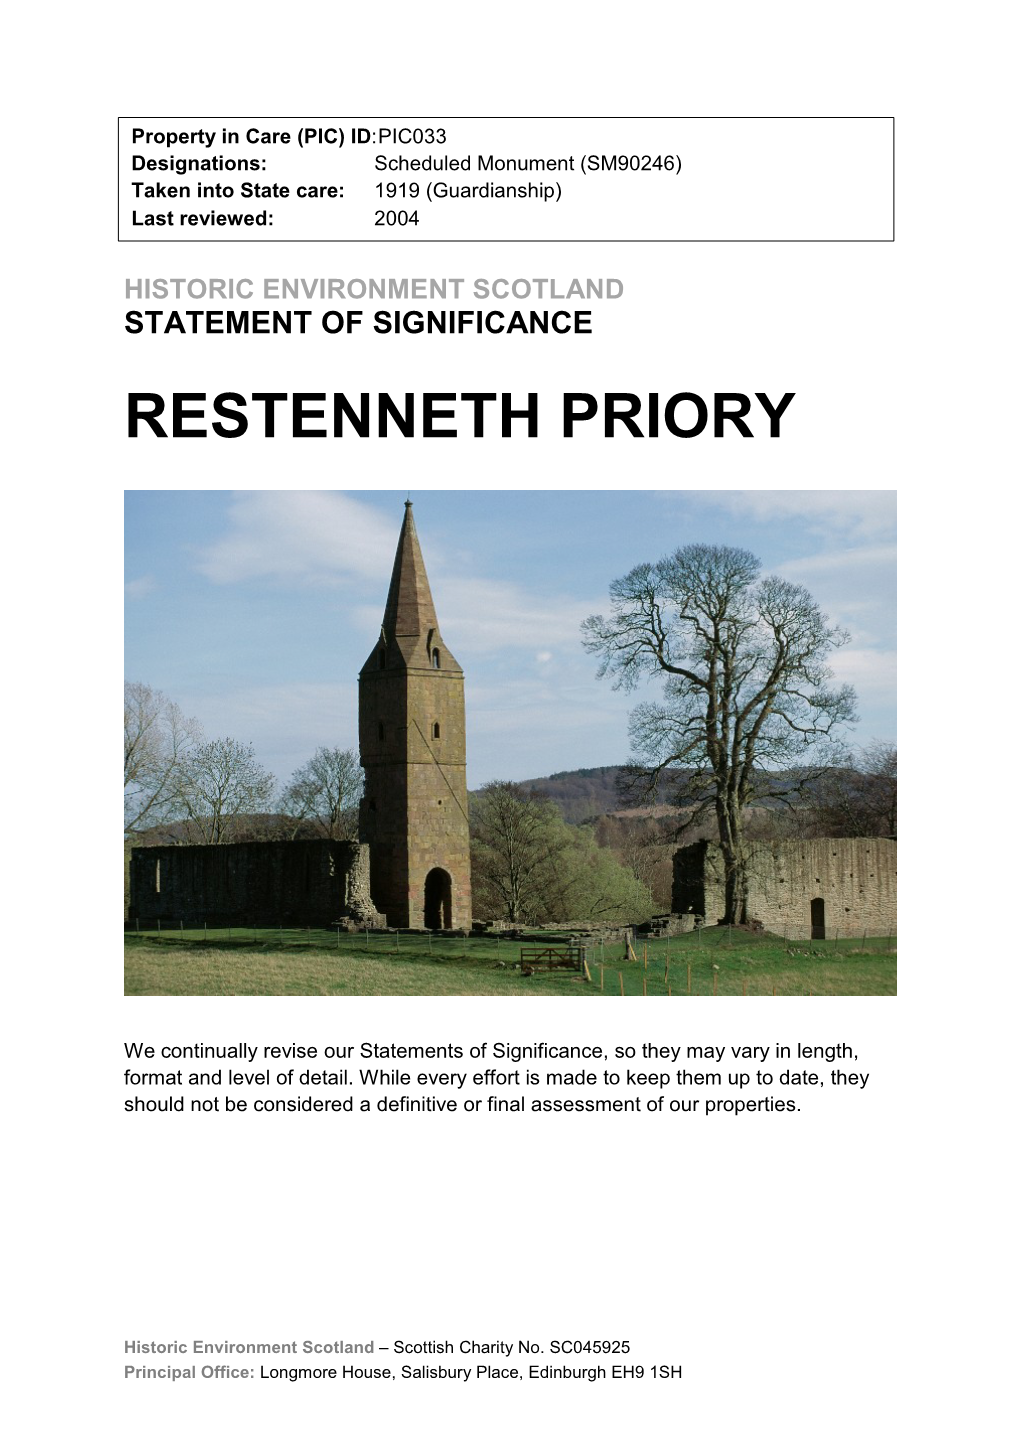 Restenneth Priory